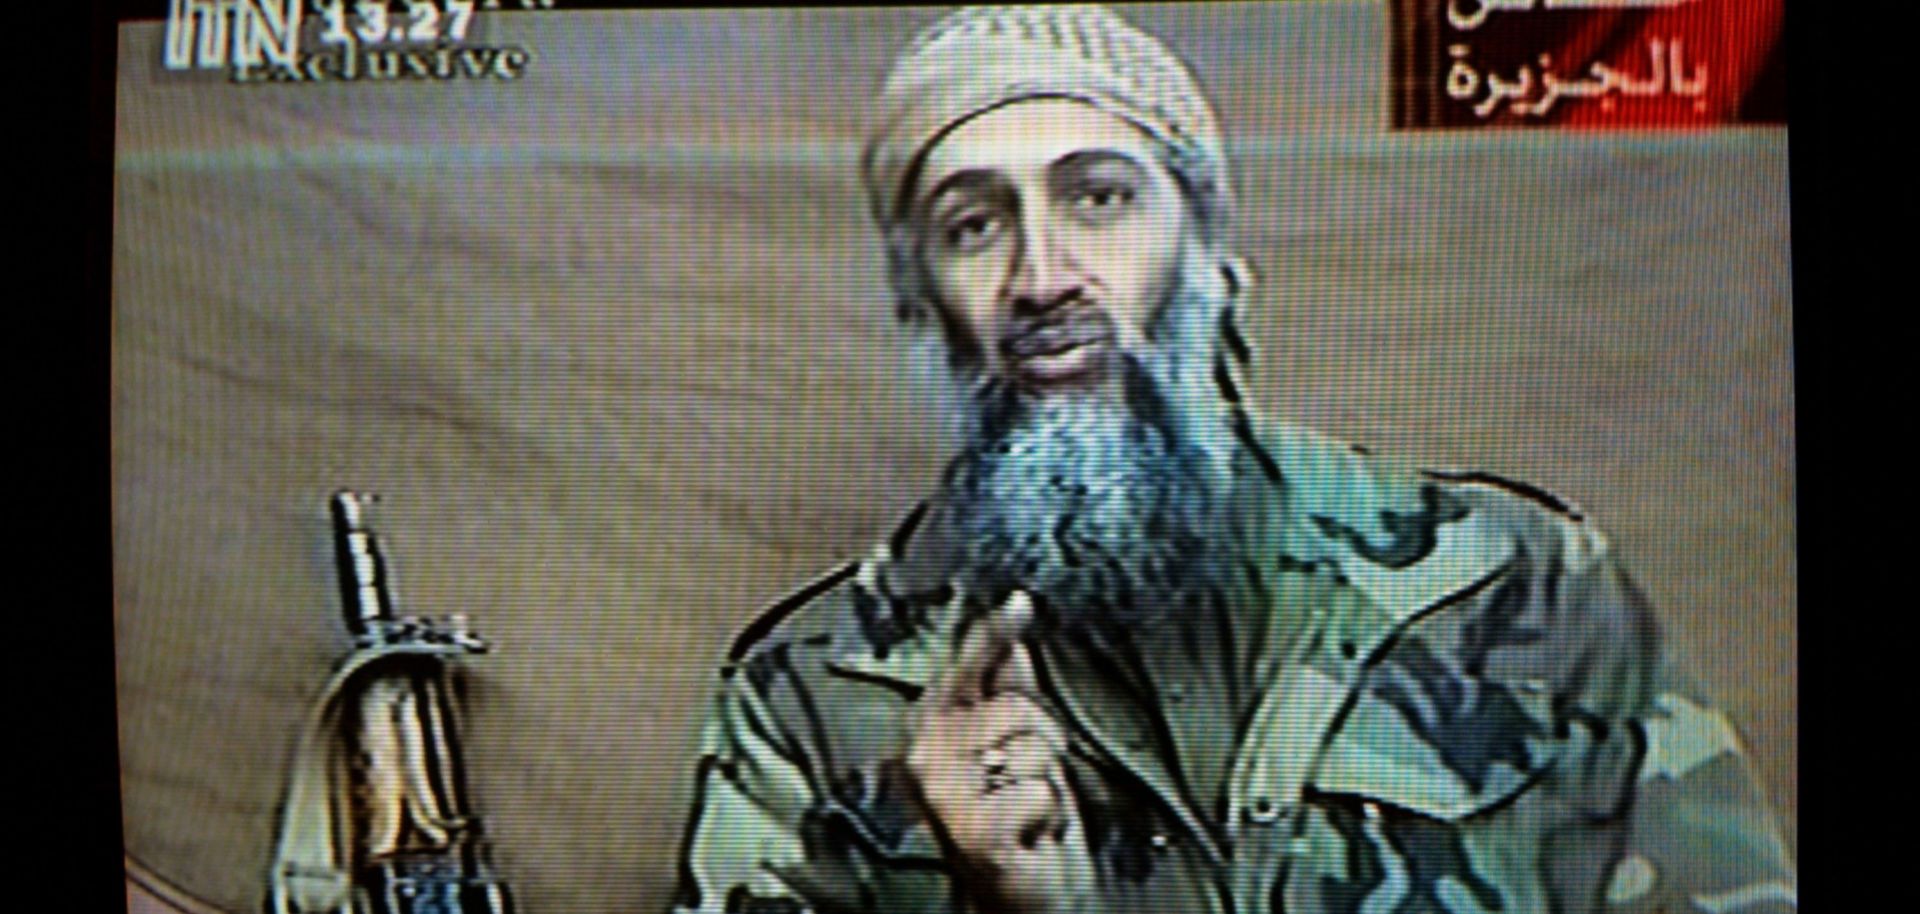 A videotape released by Al-Jazeera TV featuring Osama Bin Laden is broadcast Dec. 27, 2001.